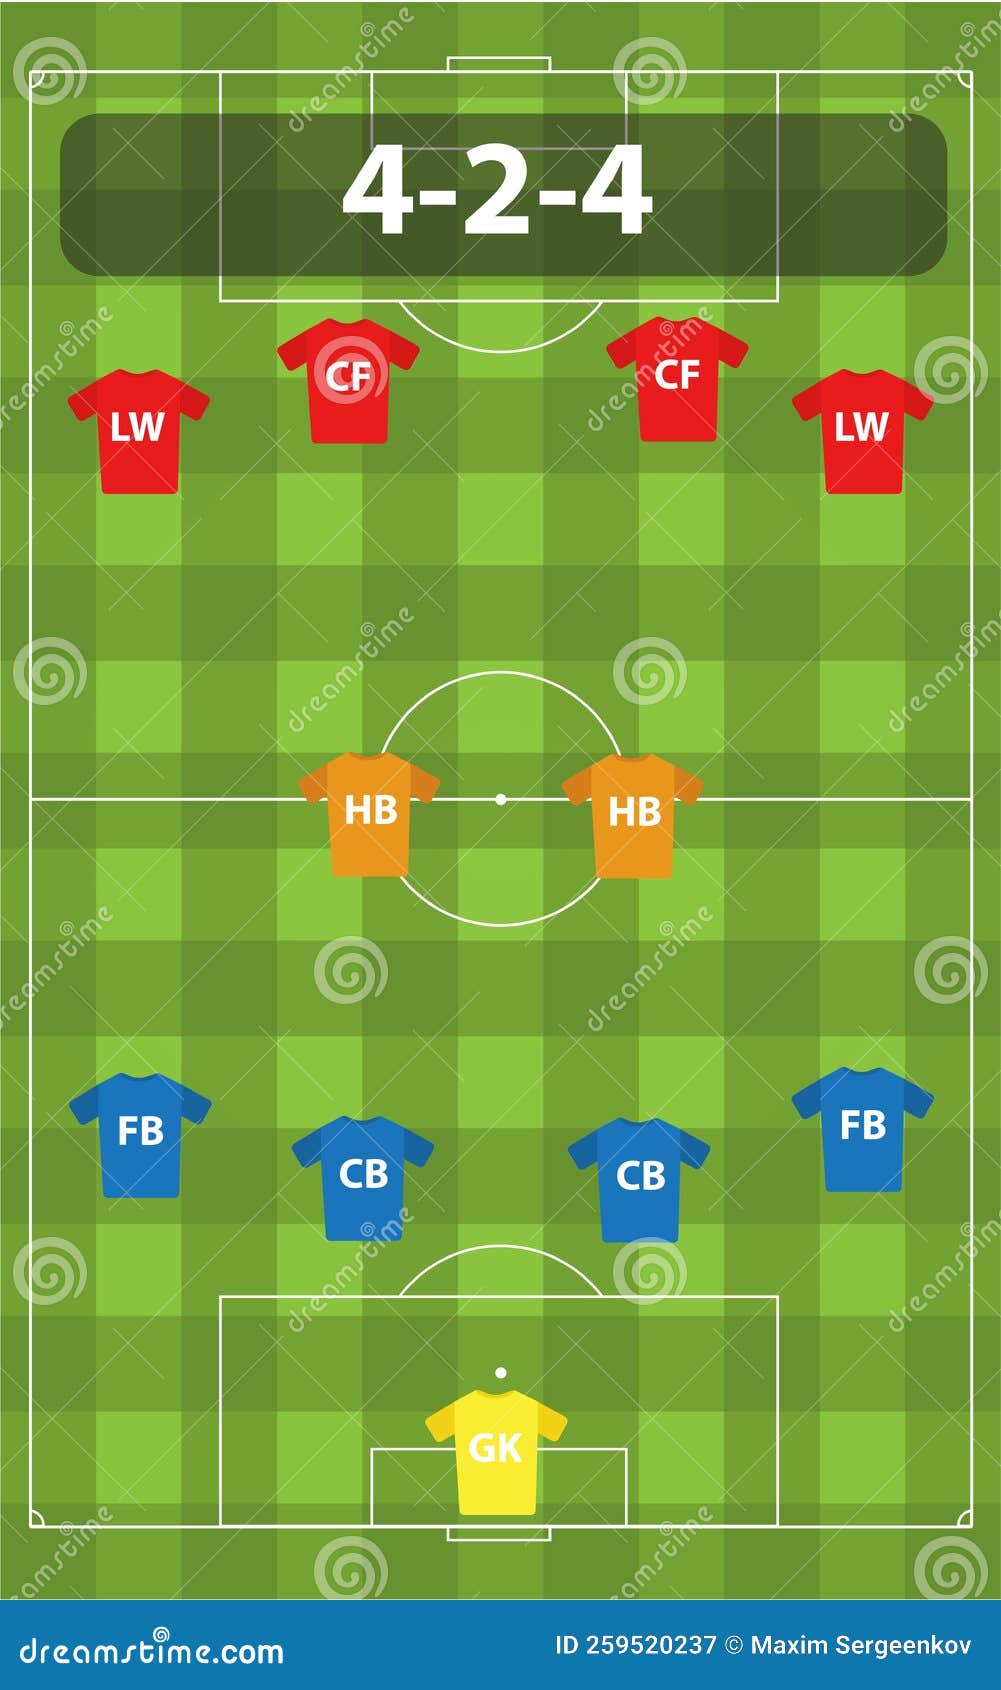 formações de futebol, esquema de formação de jogadores de futebol 4-4-2 em  uma ilustração de campo de futebol. 8415268 Vetor no Vecteezy